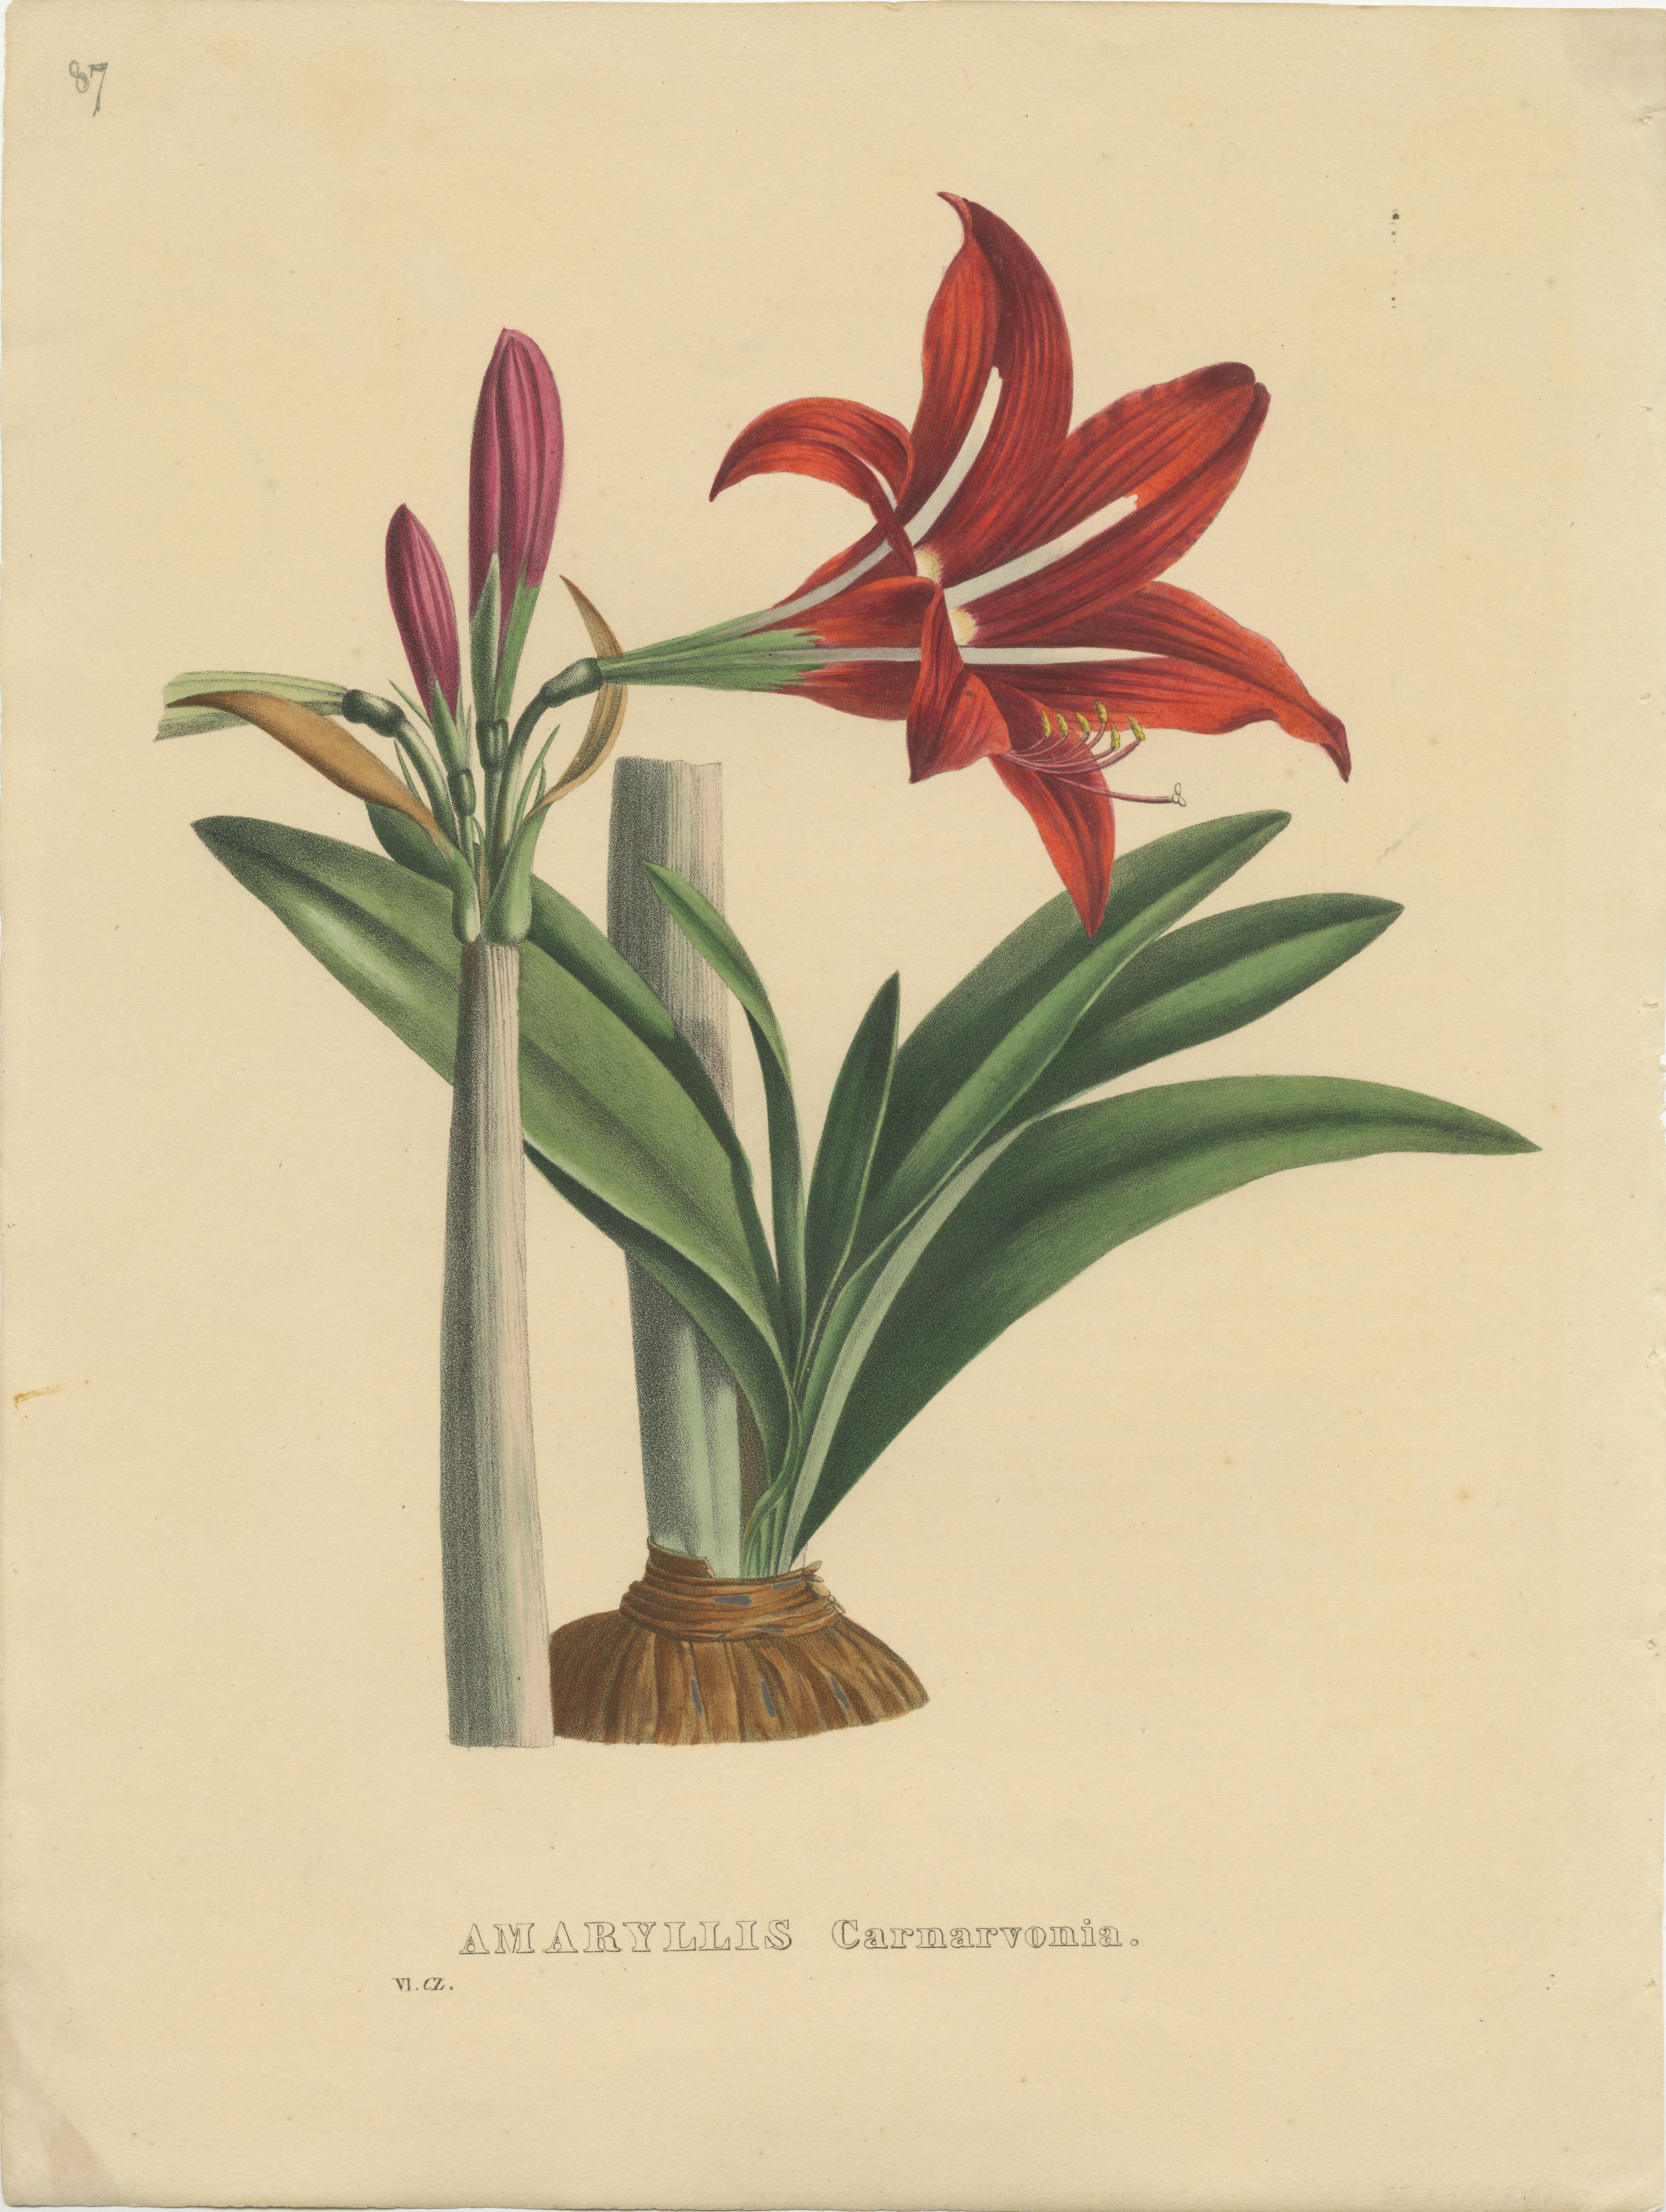 Antiker botanischer Druck mit dem Titel 'Amaryllis Carnarvonia'. Alter Originaldruck einer Amaryllisart. Dieser Druck stammt aus dem 